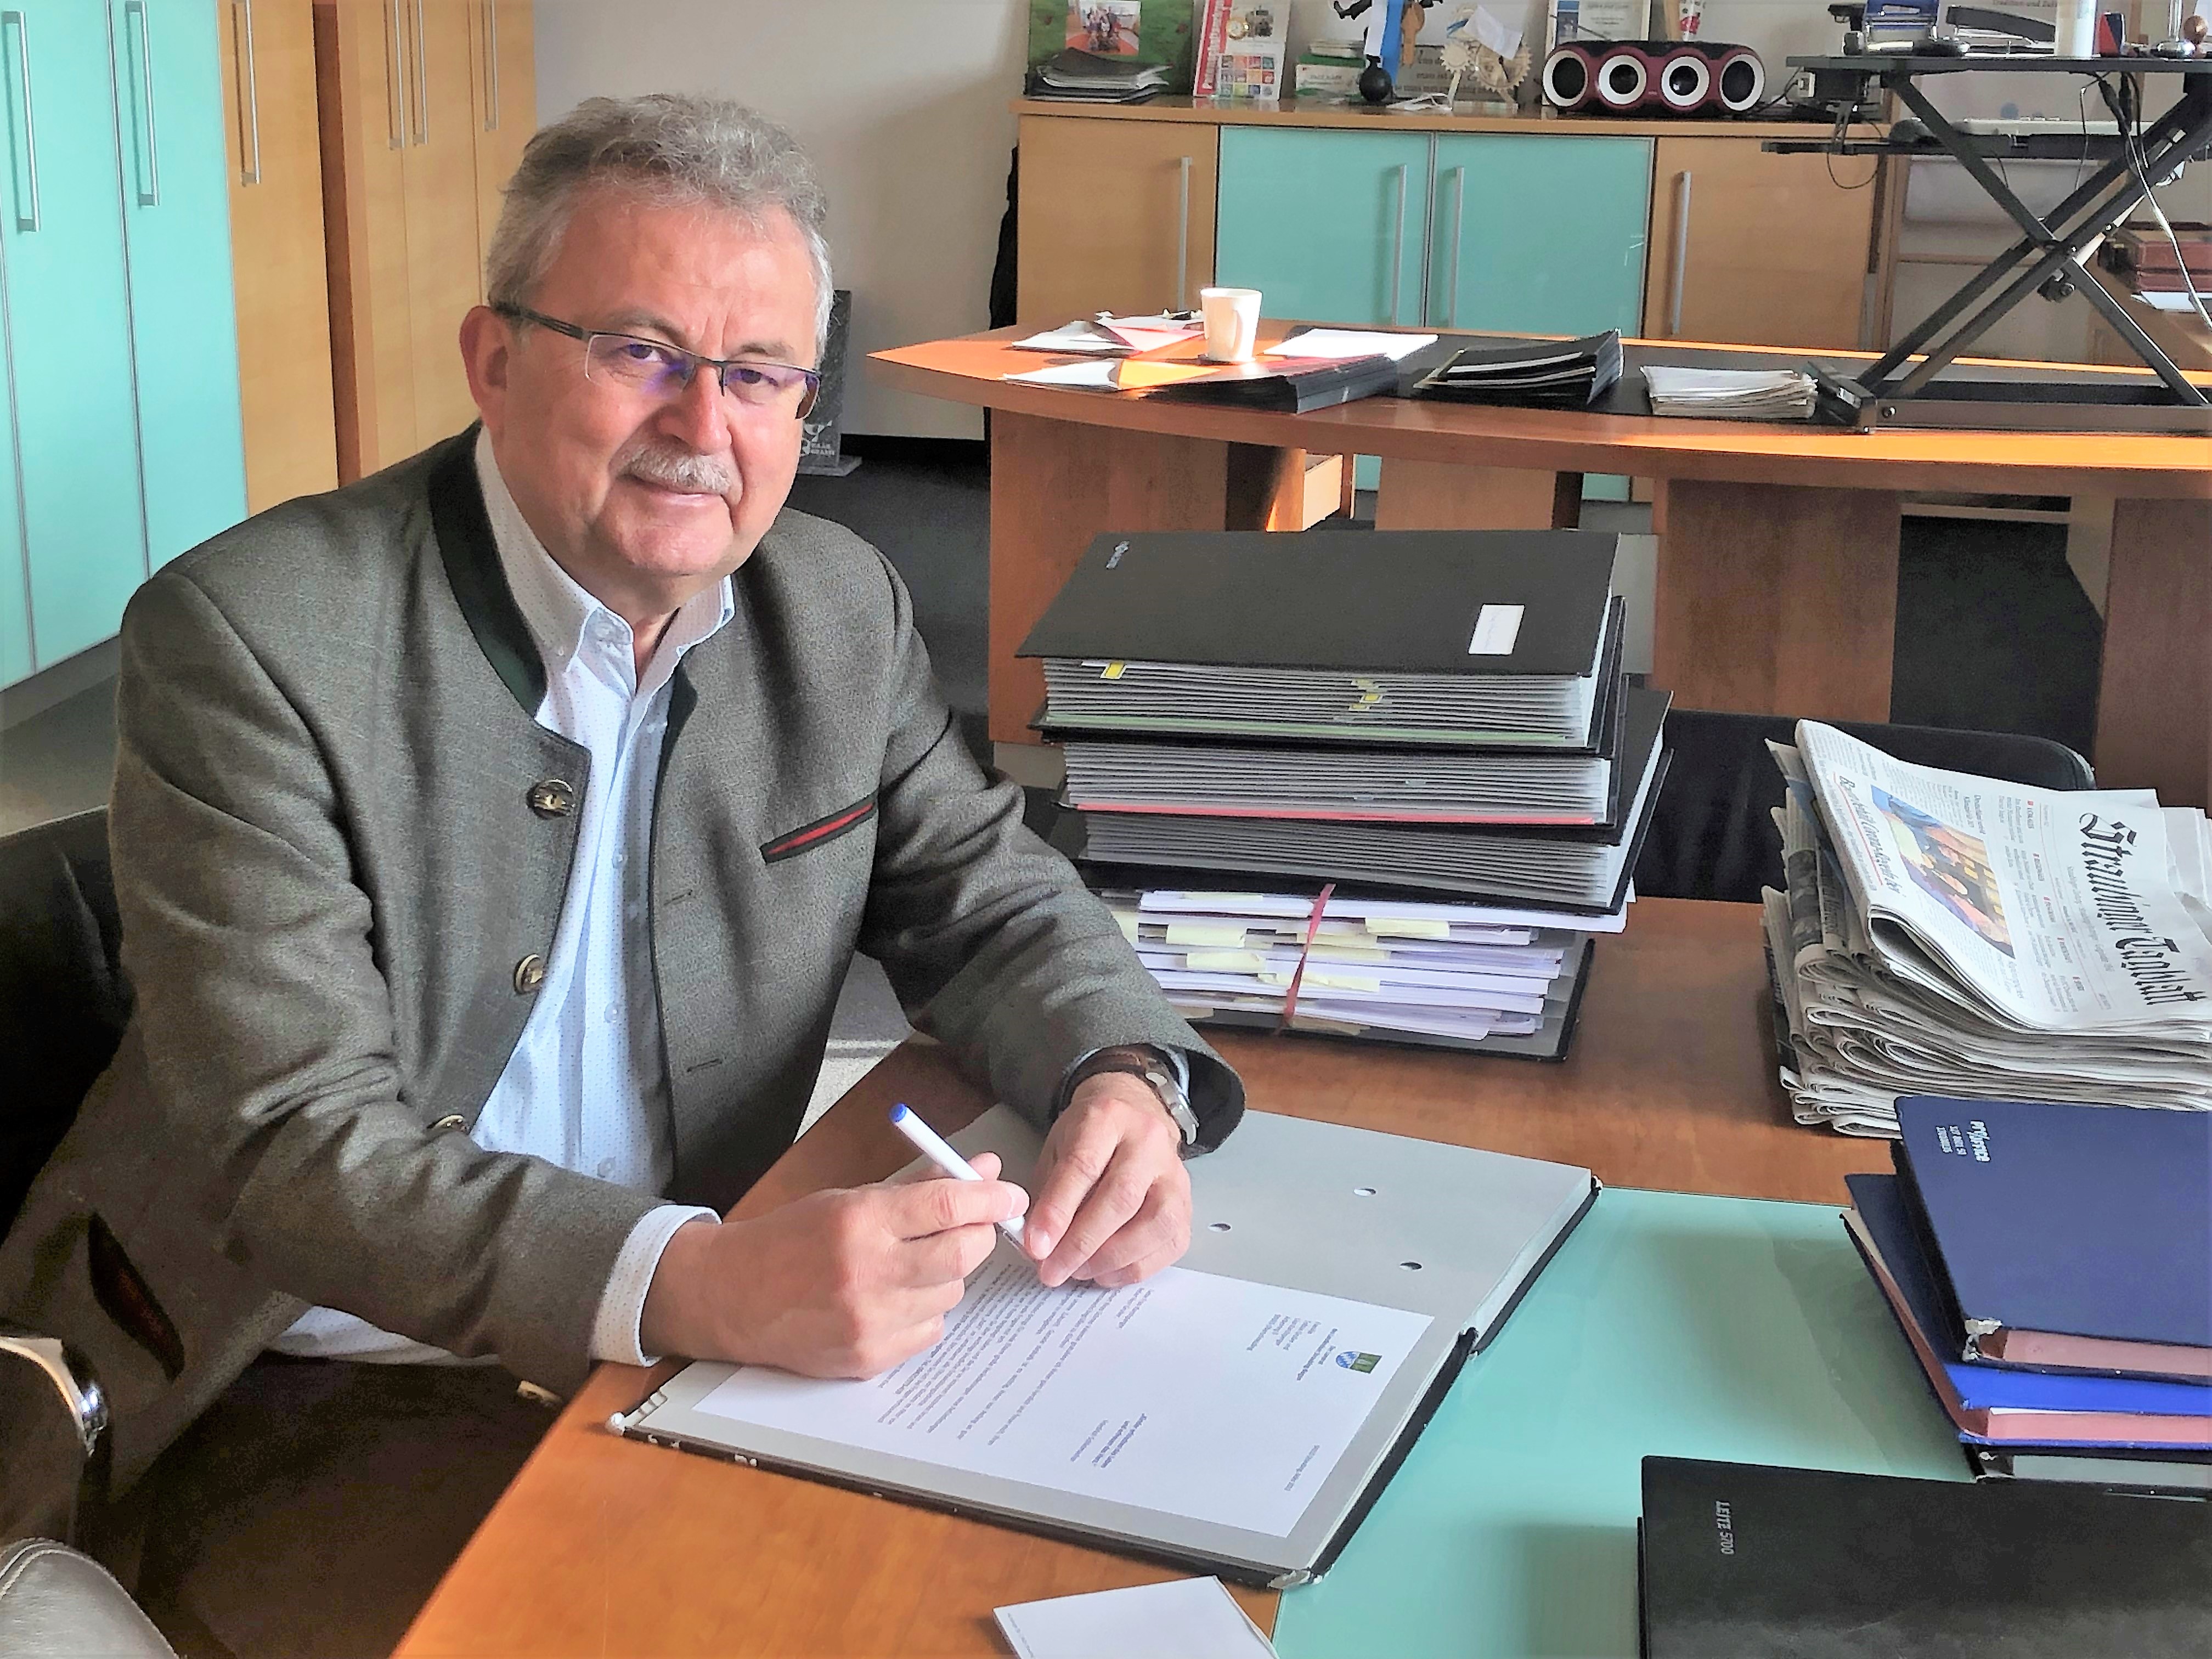 Landrat Josef Laumer nach überstandener SARS-CoV2-Infektion zurück im Dienst